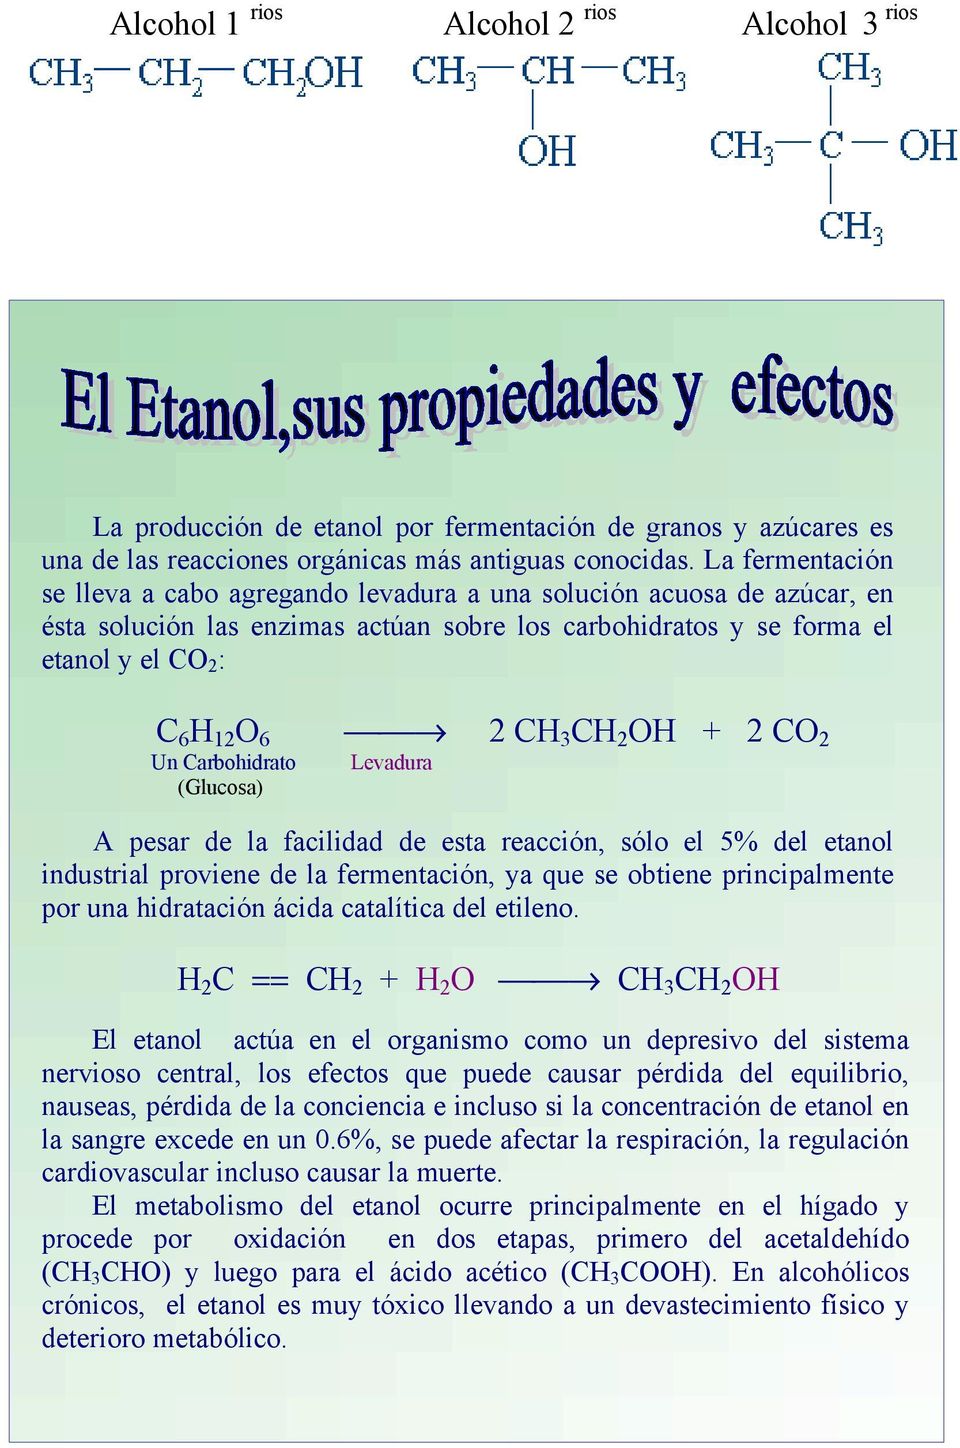 Carbohidrato (Glucosa) 2 CH 3 CH 2 OH + 2 CO 2 Levadura A pesar de la facilidad de esta reacción, sólo el 5% del etanol industrial proviene de la fermentación, ya que se obtiene principalmente por